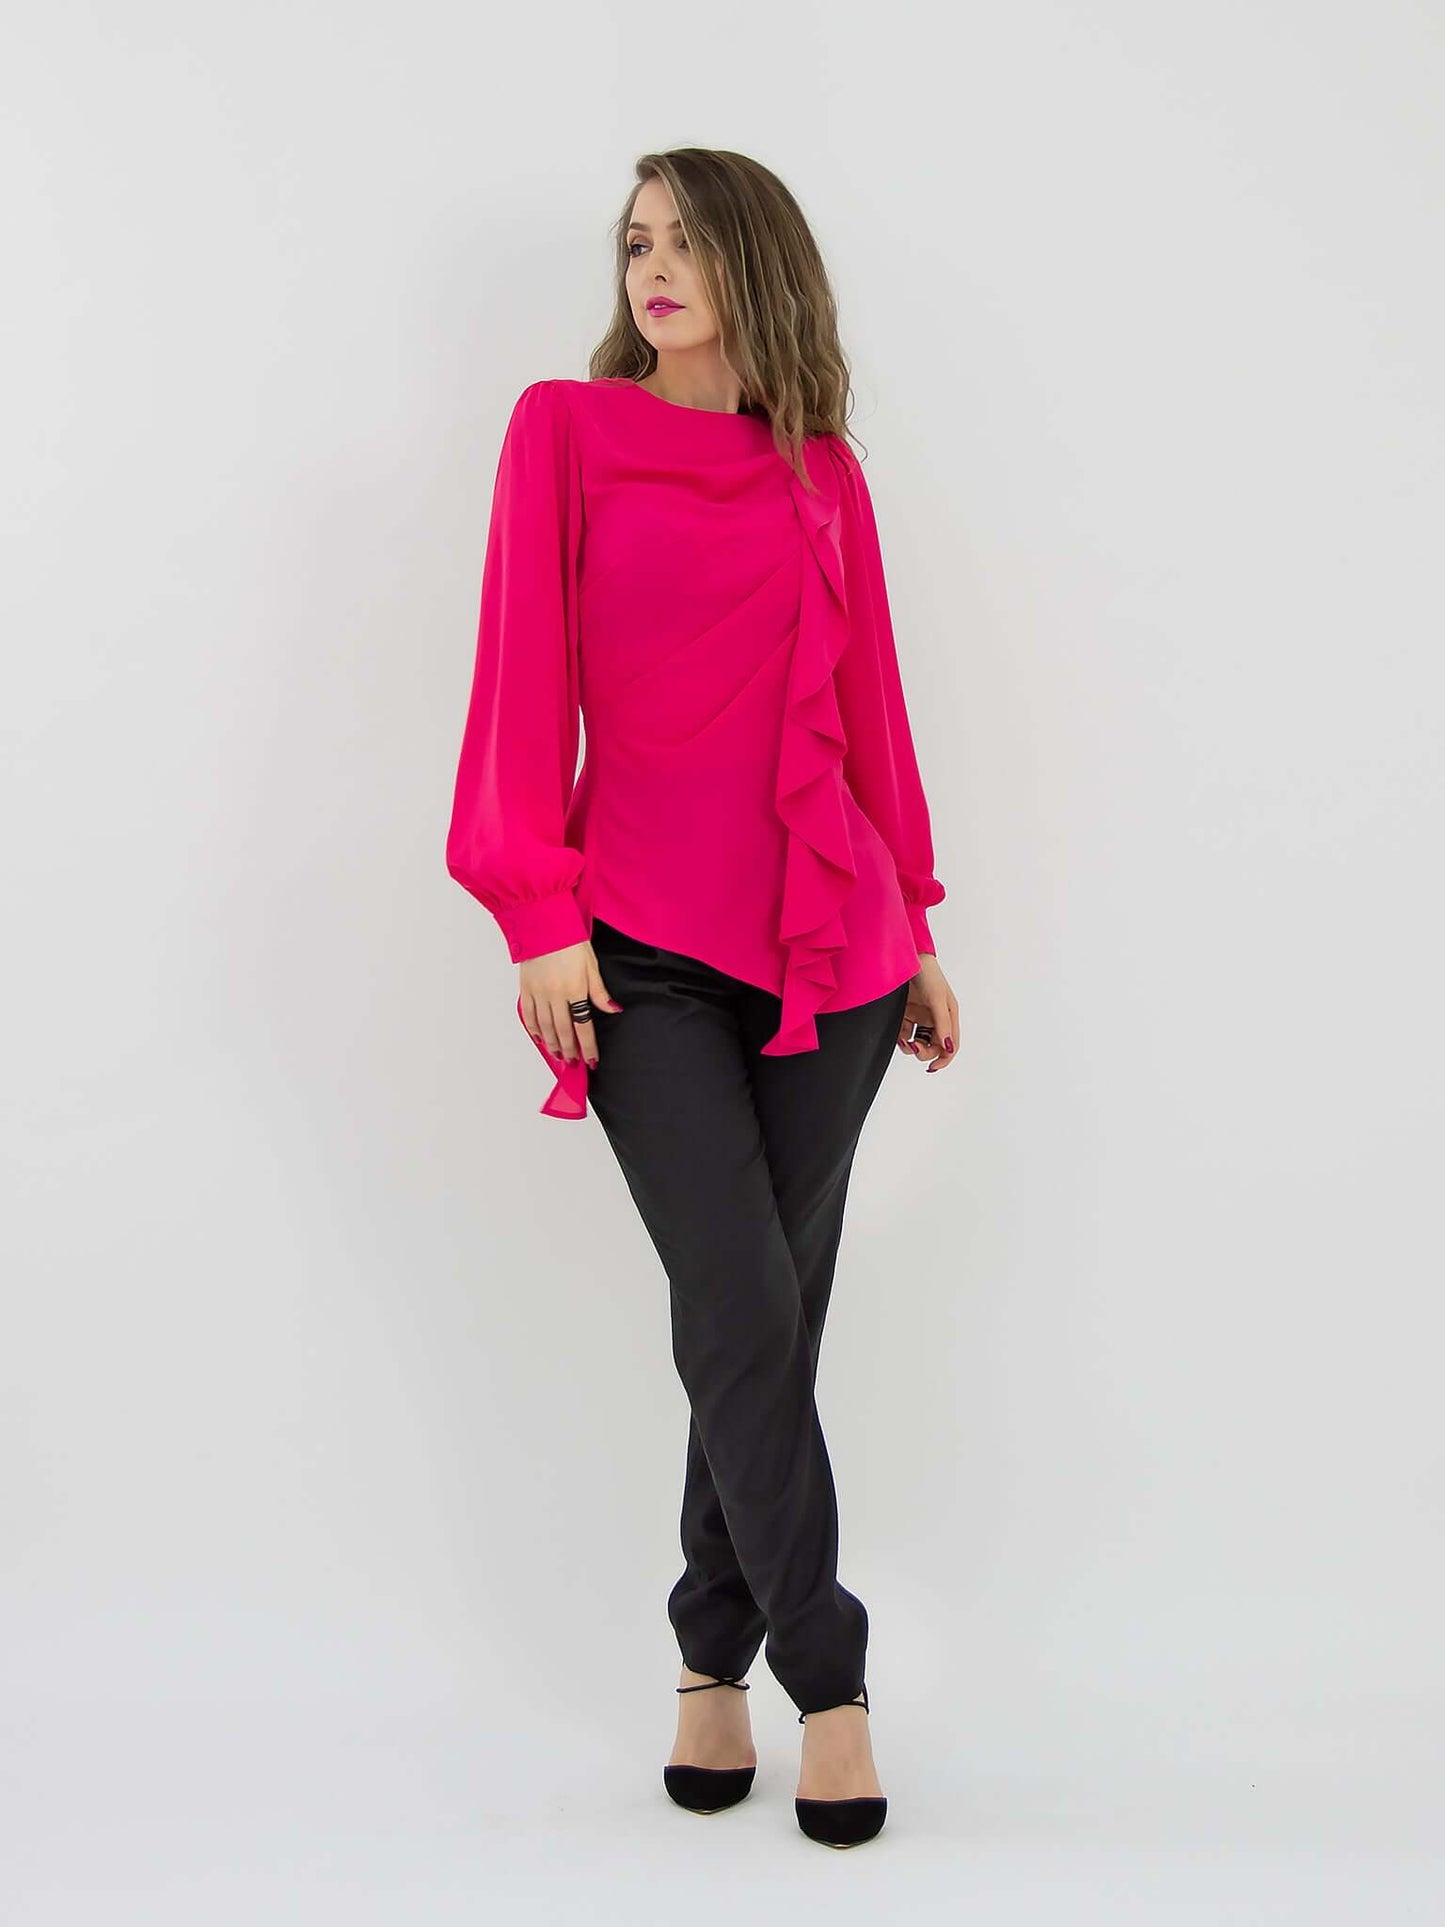 Dress to Impress Asymmetric Drape Blouse - Pink